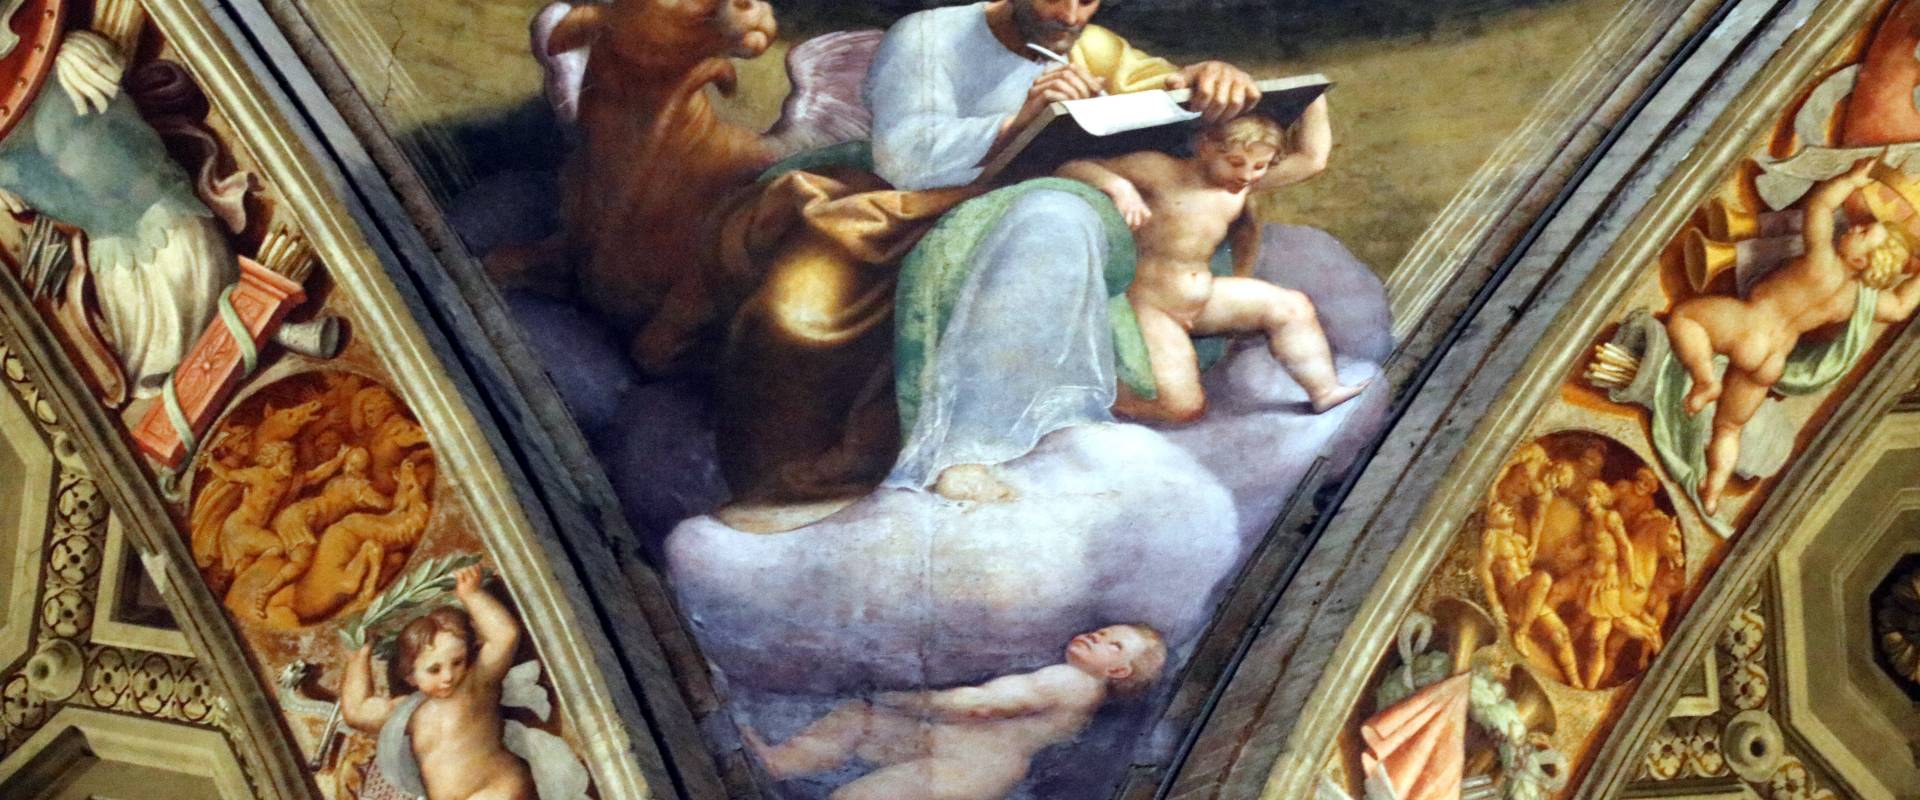 Bernardino Gatti detto il Soiaro e aiuti, 1543, evangelista 10 photo by Mongolo1984